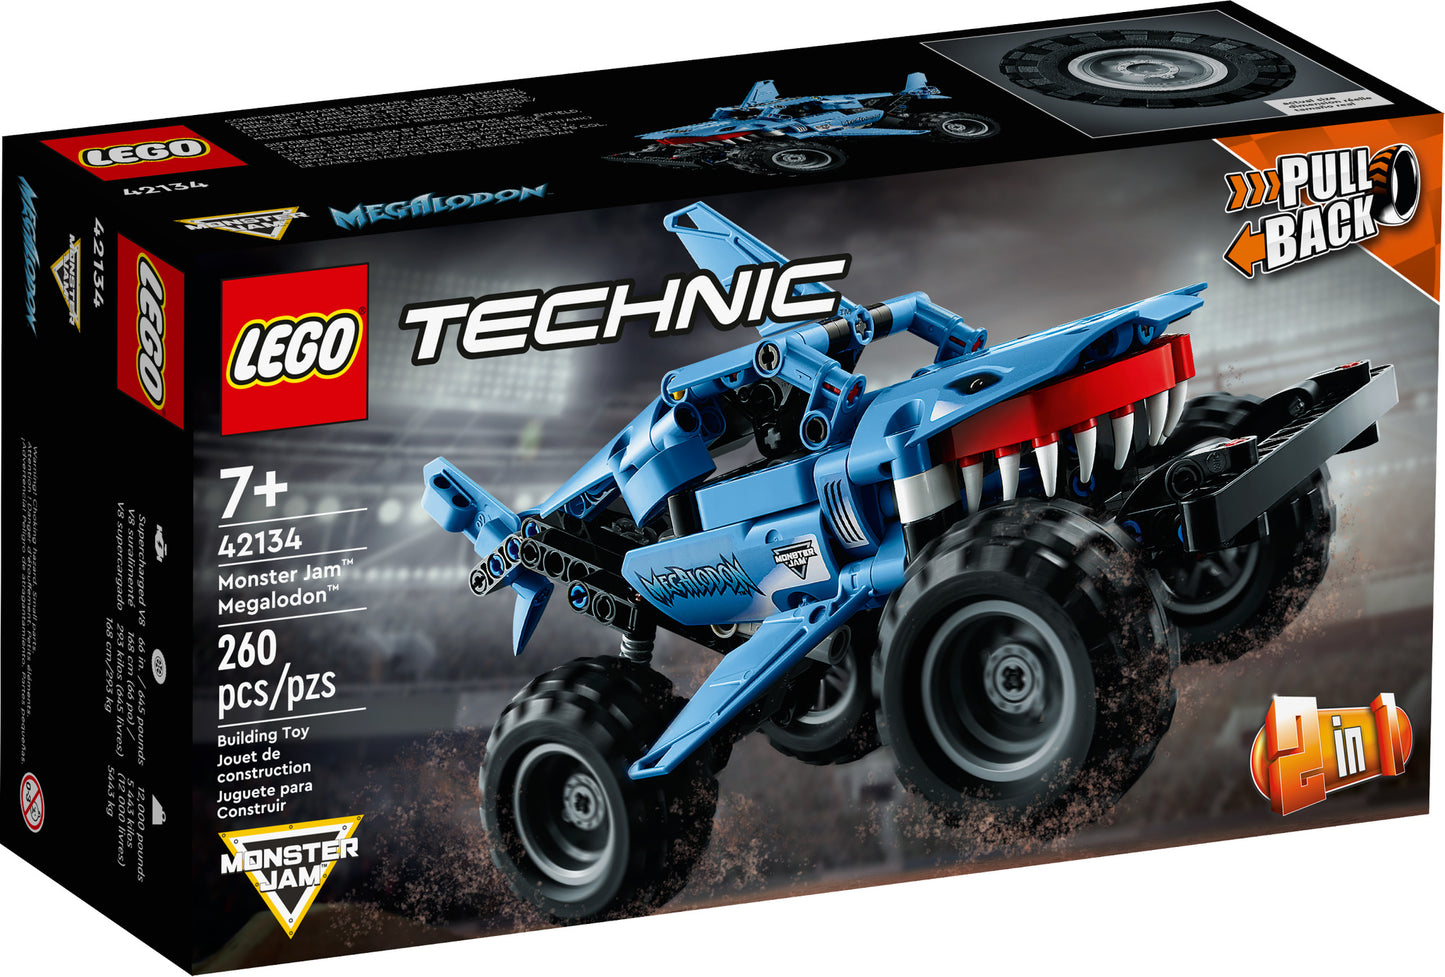 42134 LEGO Technic - Monster Jam Megalodon